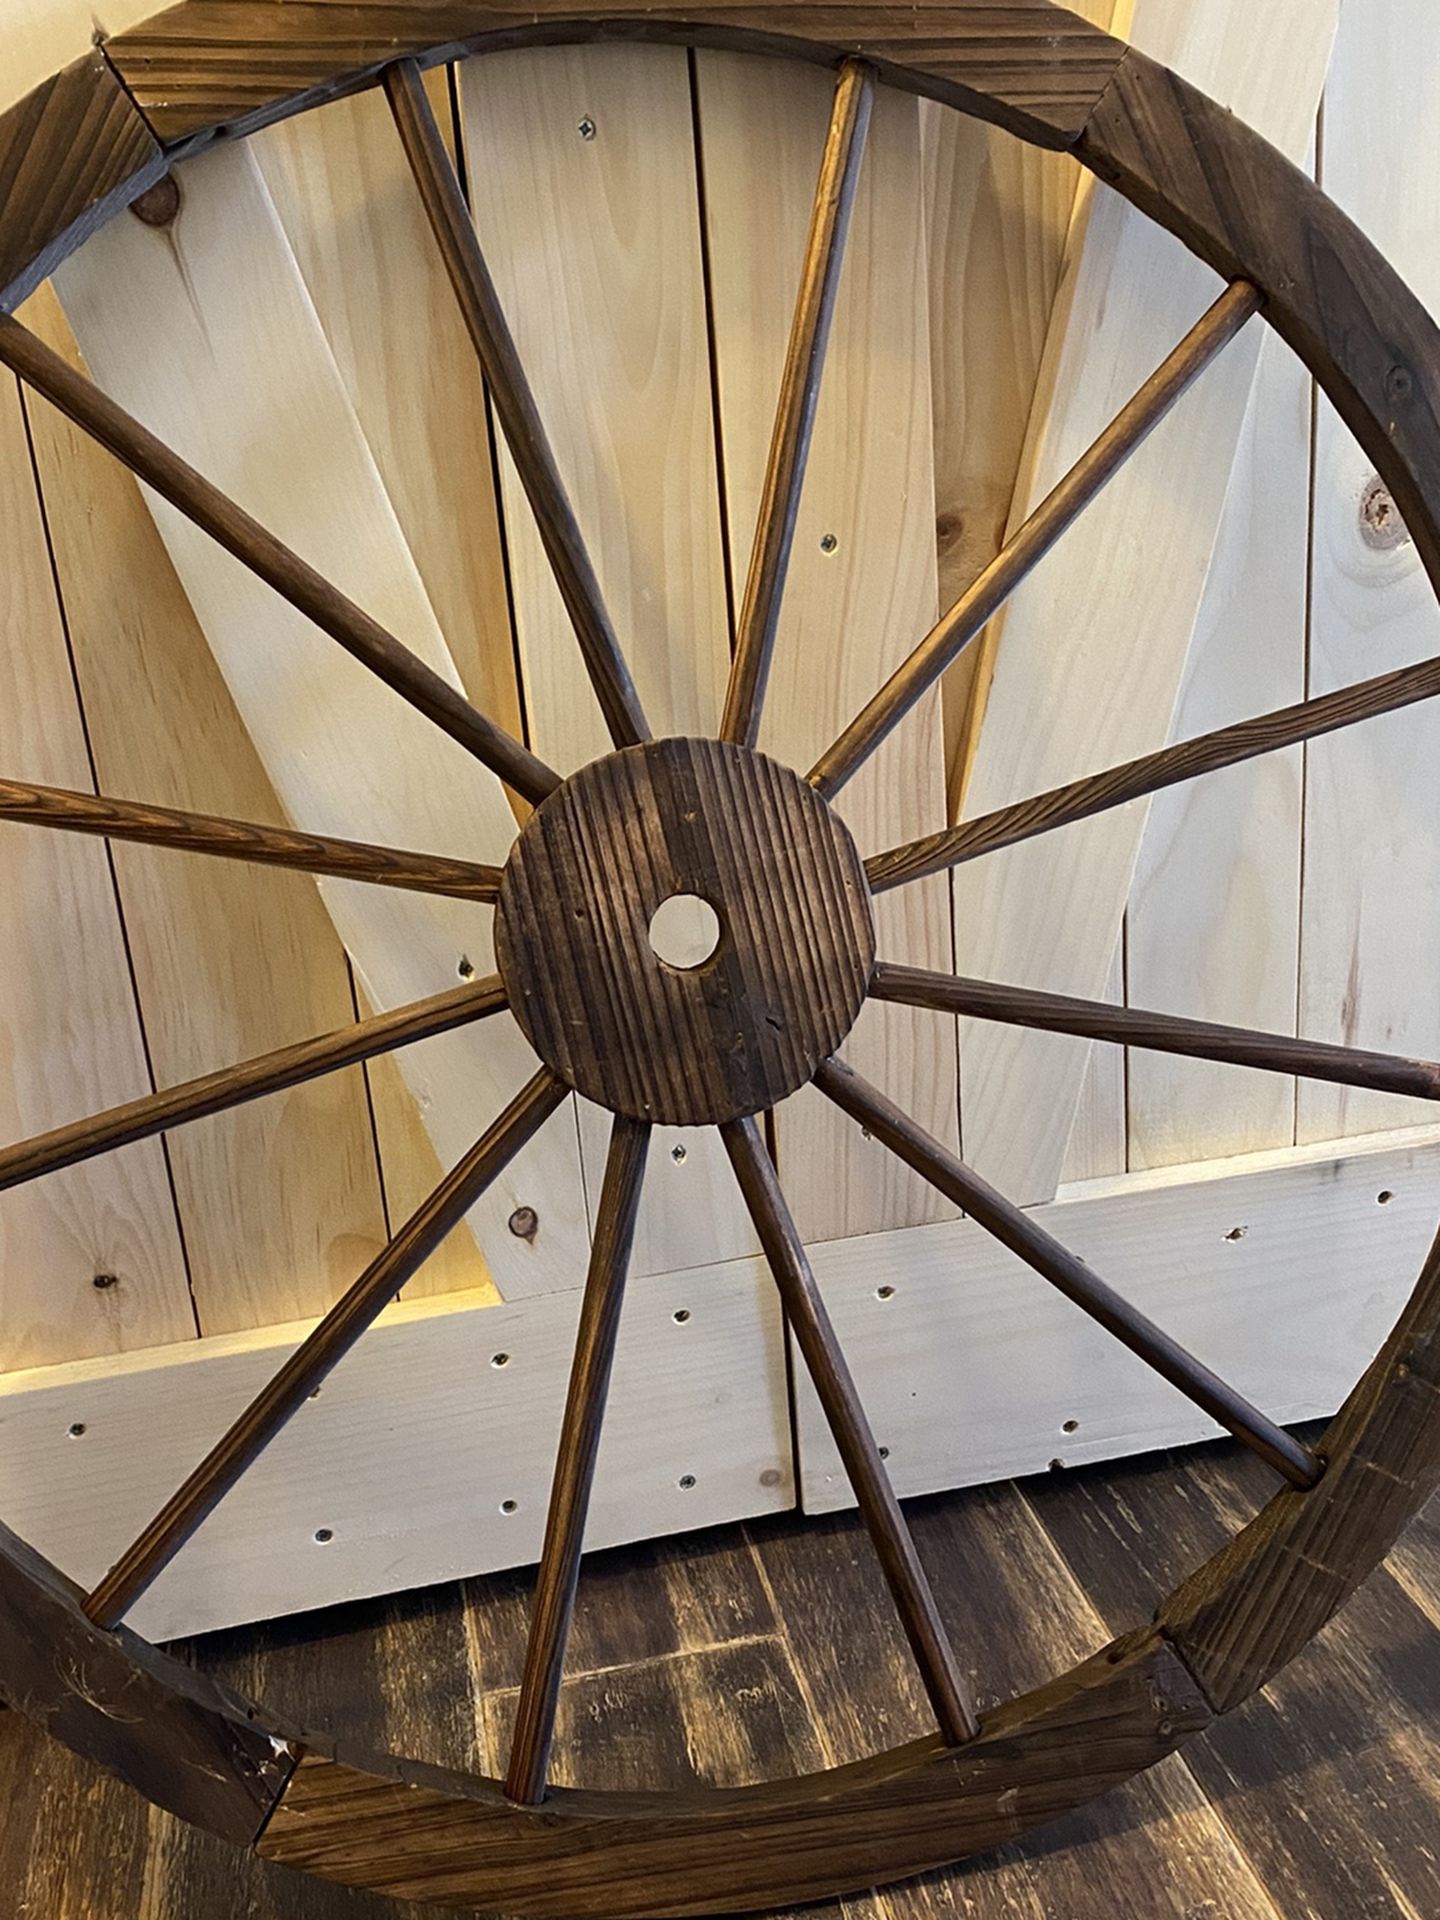 Wood Wagon Wheel